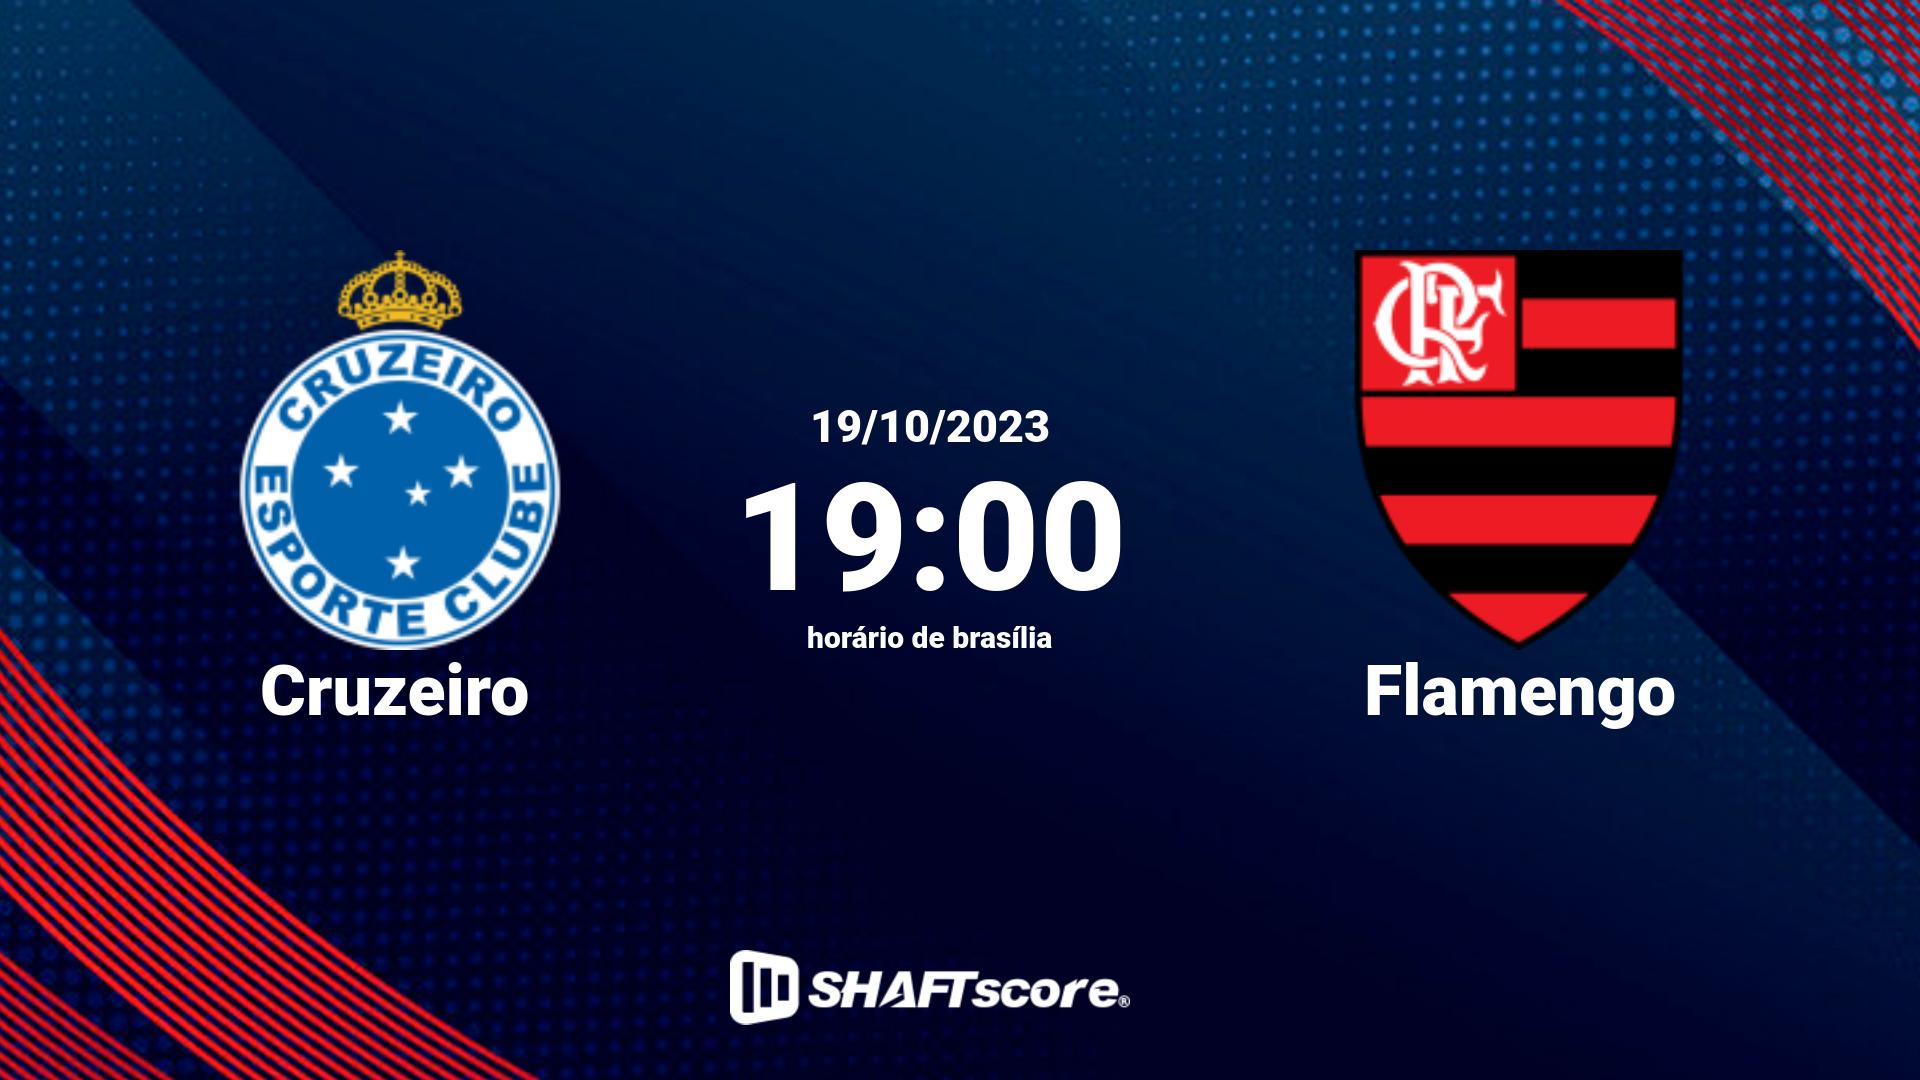 Estatísticas do jogo Cruzeiro vs Flamengo 19.10 19:00